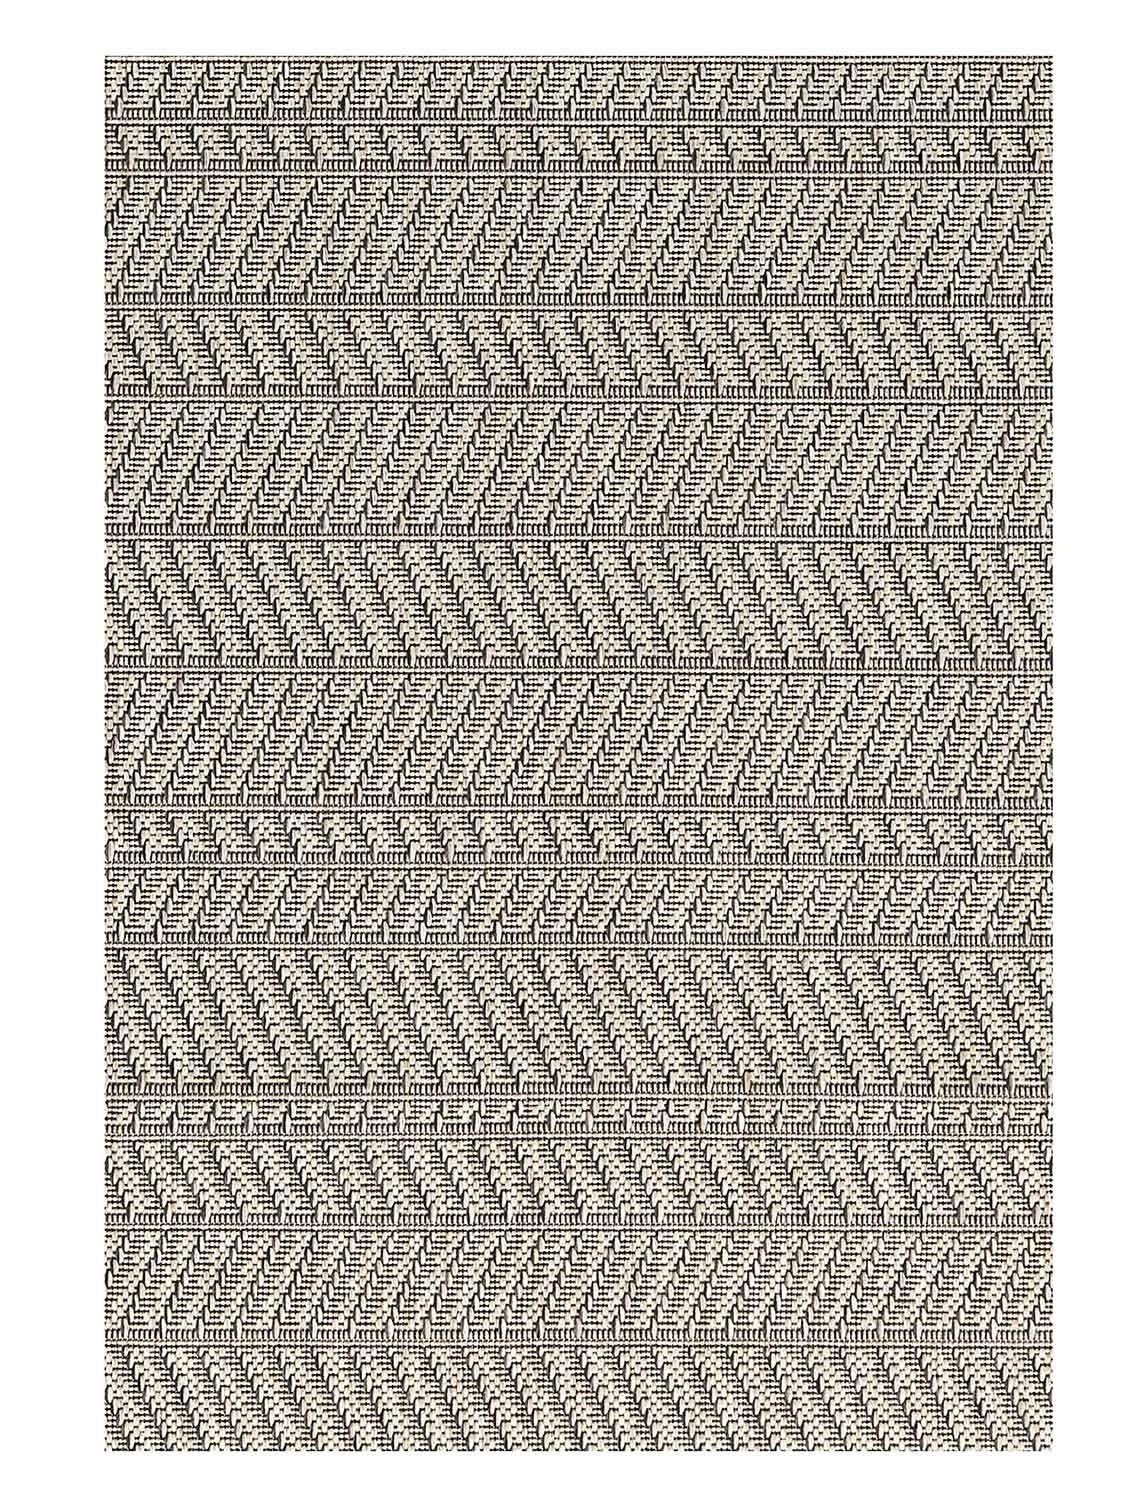 Outdoorteppich LINEO, Beige, Schwarz, Kunstfaser, rechteckig, 200 x 290 Wasserabweisend cm, UV-beständig